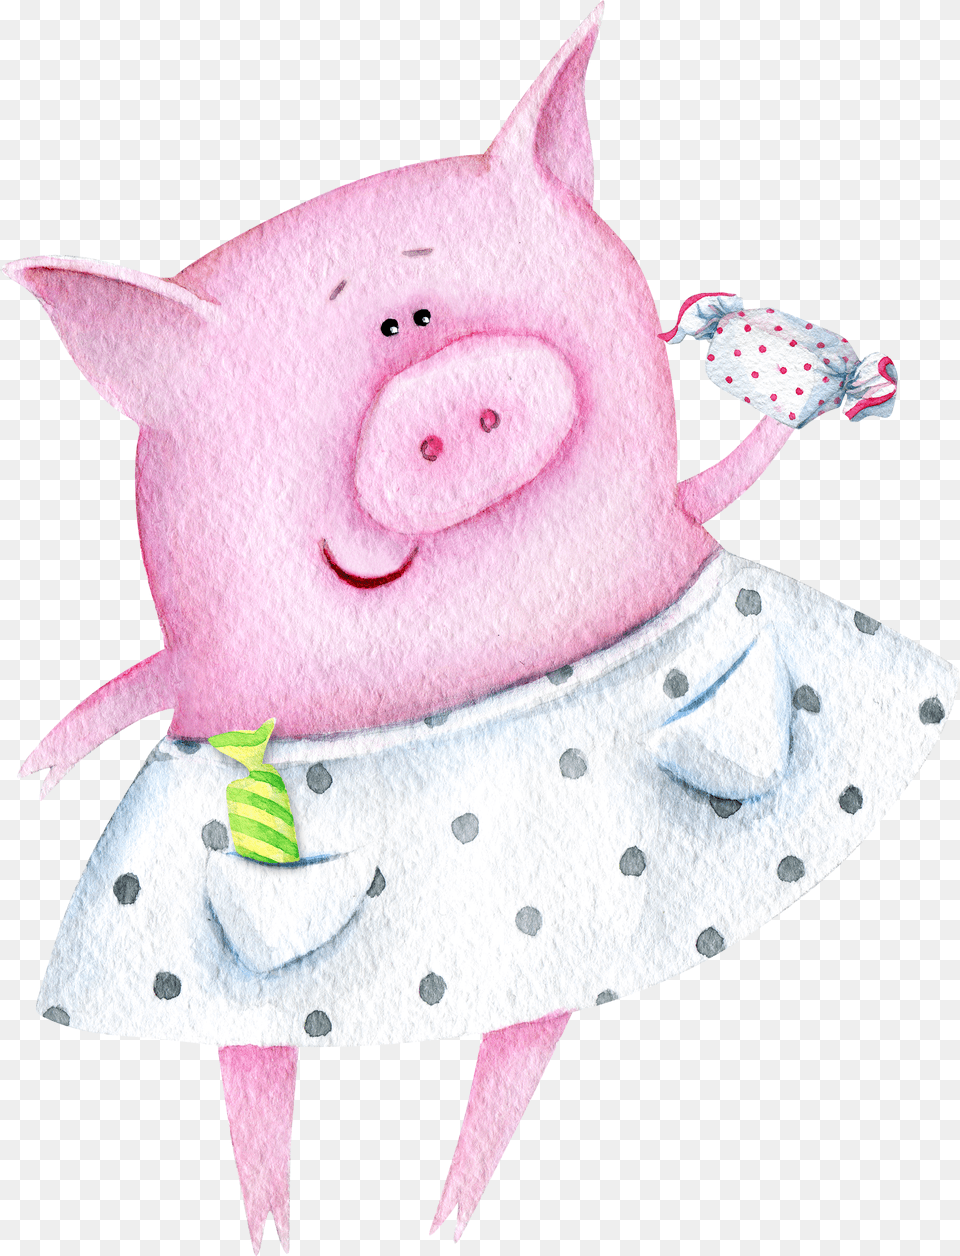 Domestic Pig Piglet Watercolor Painting Illustration Dnem Rozhdeniya Yulya Svinya Png Image